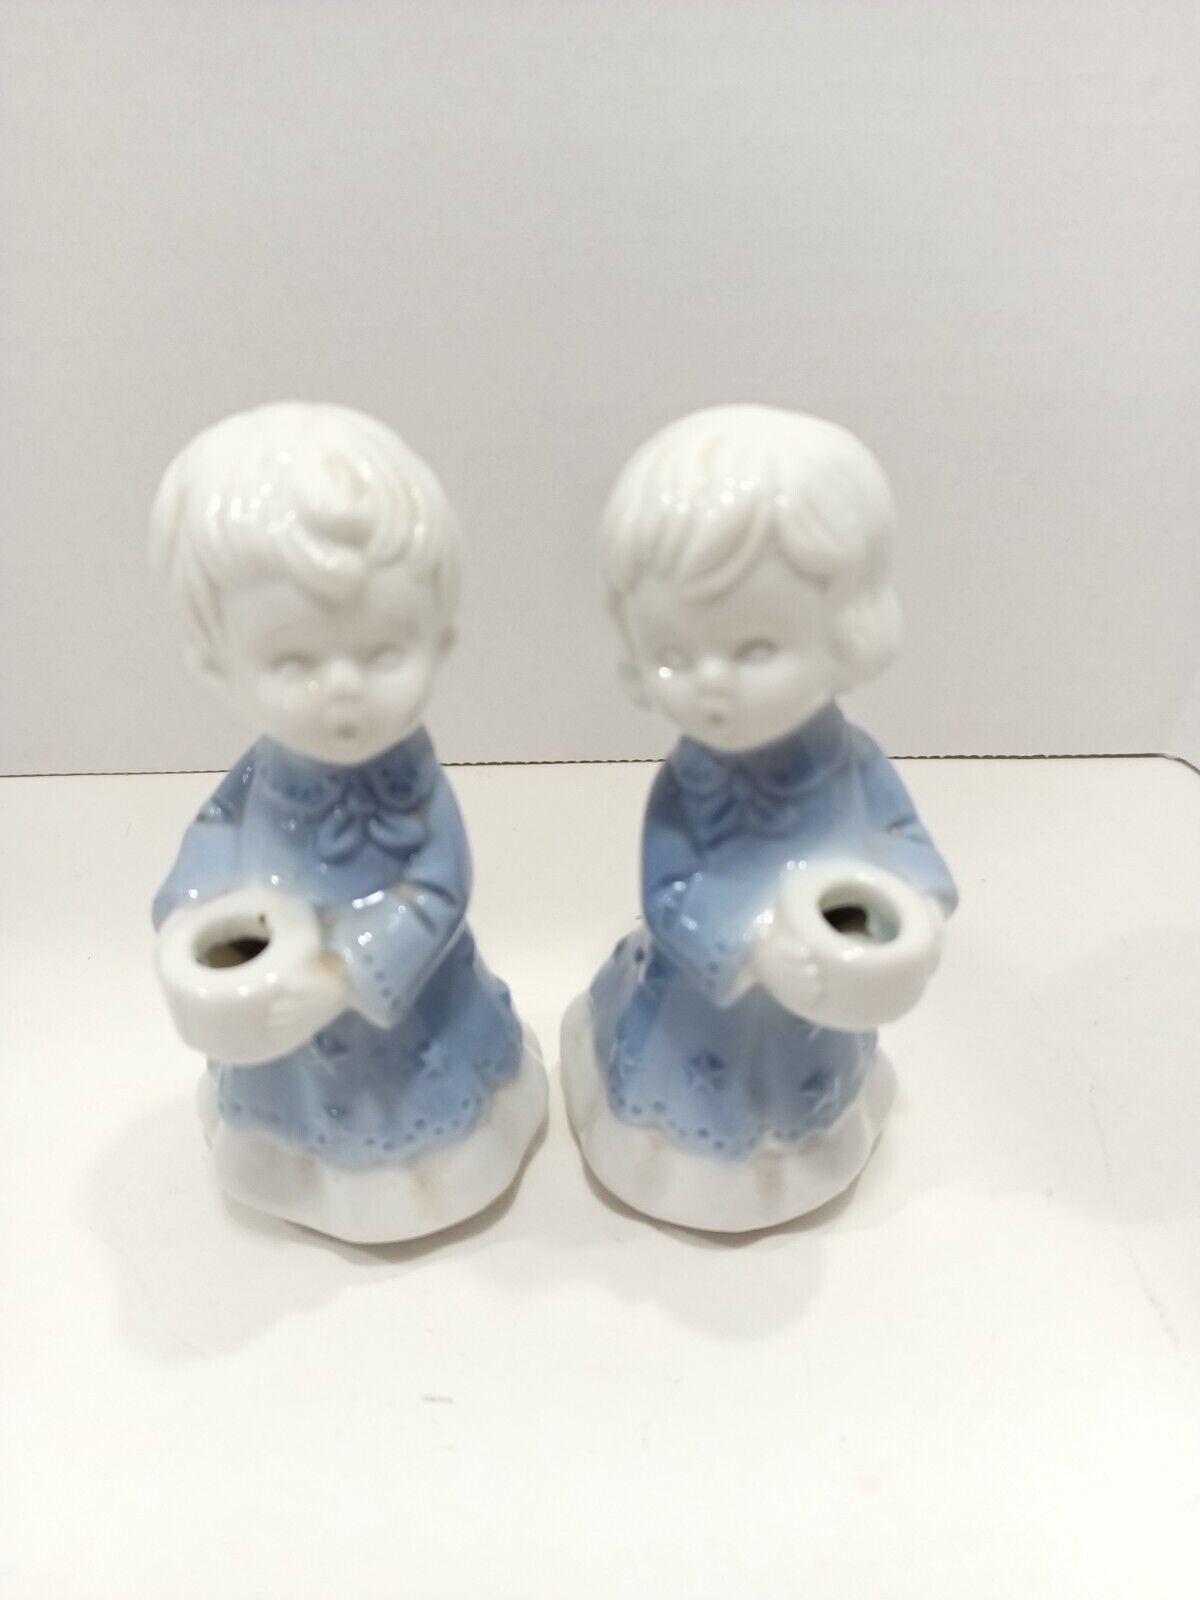 German Porcelain Candle Children KERZENKINDER AUS PORZELLAN Figurines Vintage